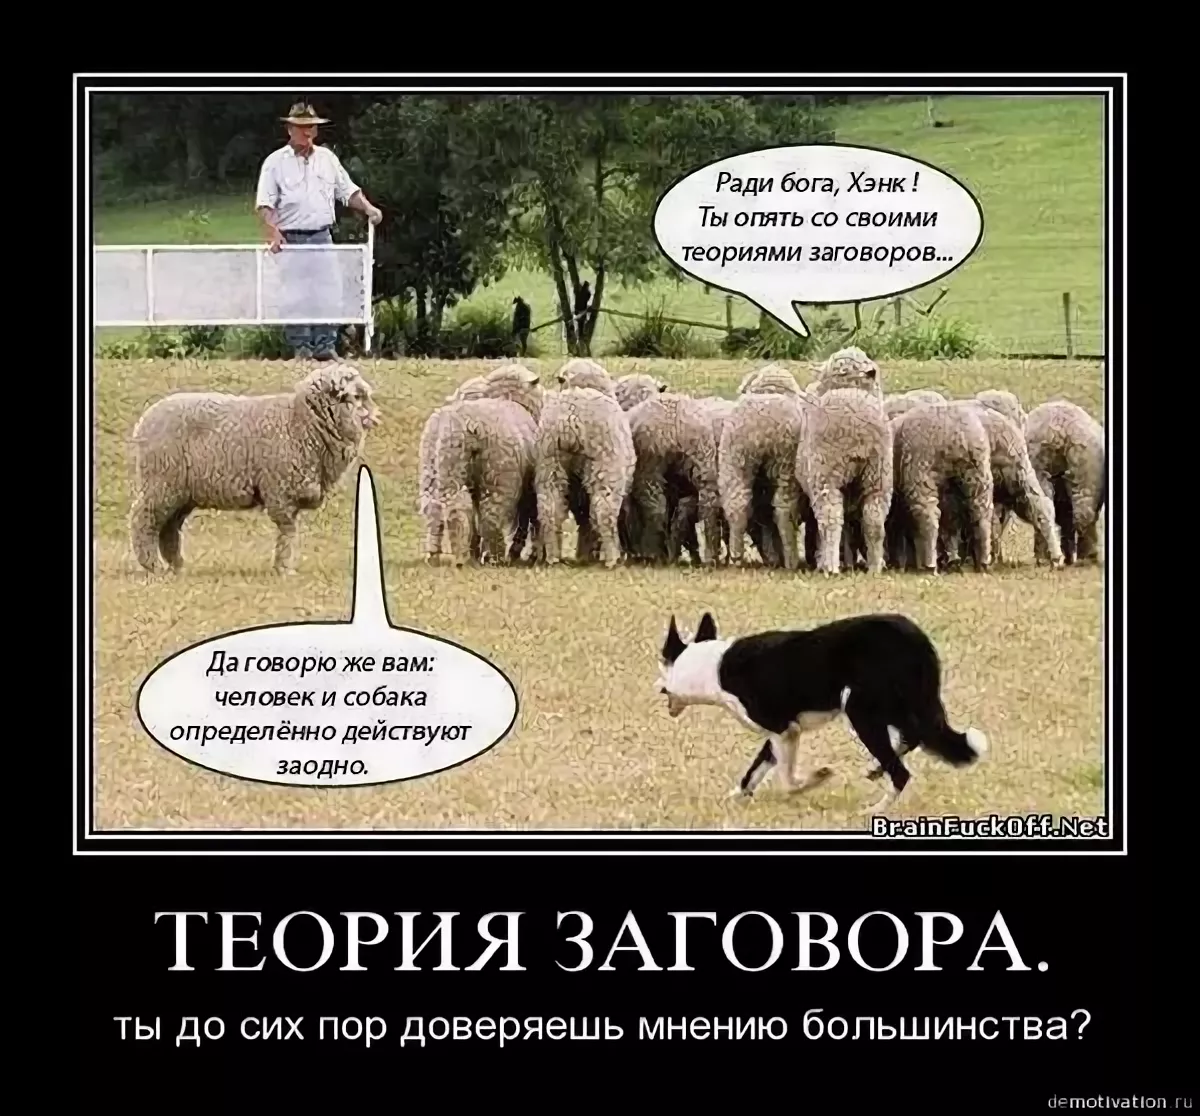 Всю жизнь овца волков. Овцы теория заговора. Опять ты со своими теориями заговора. Говорю вам собака и человек действуют заодно. Теория заговора демотиваторы.